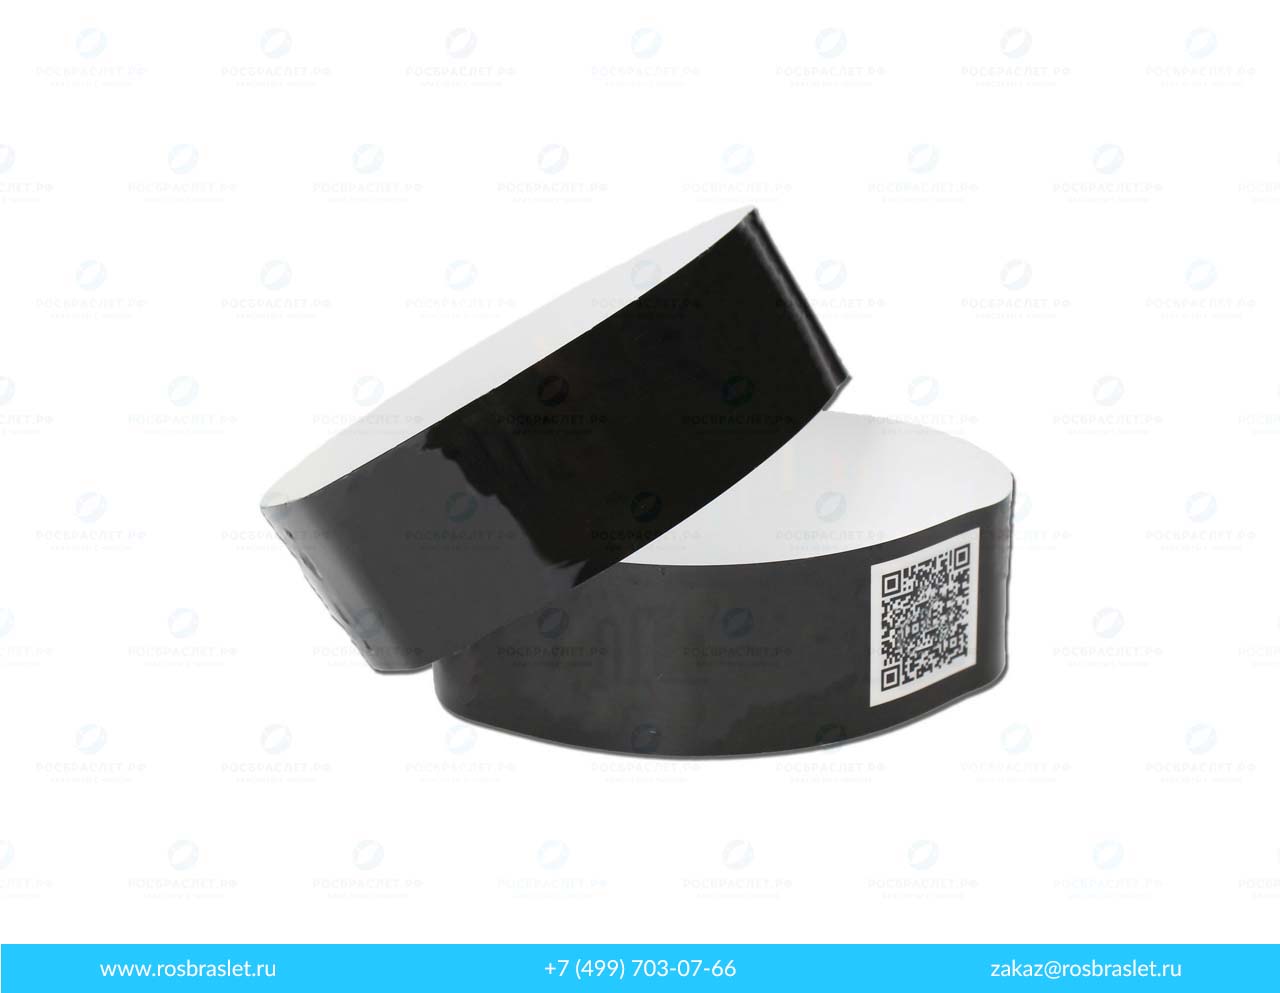 Бумажные одноразовые RFID-браслеты SMARTTAG-F31